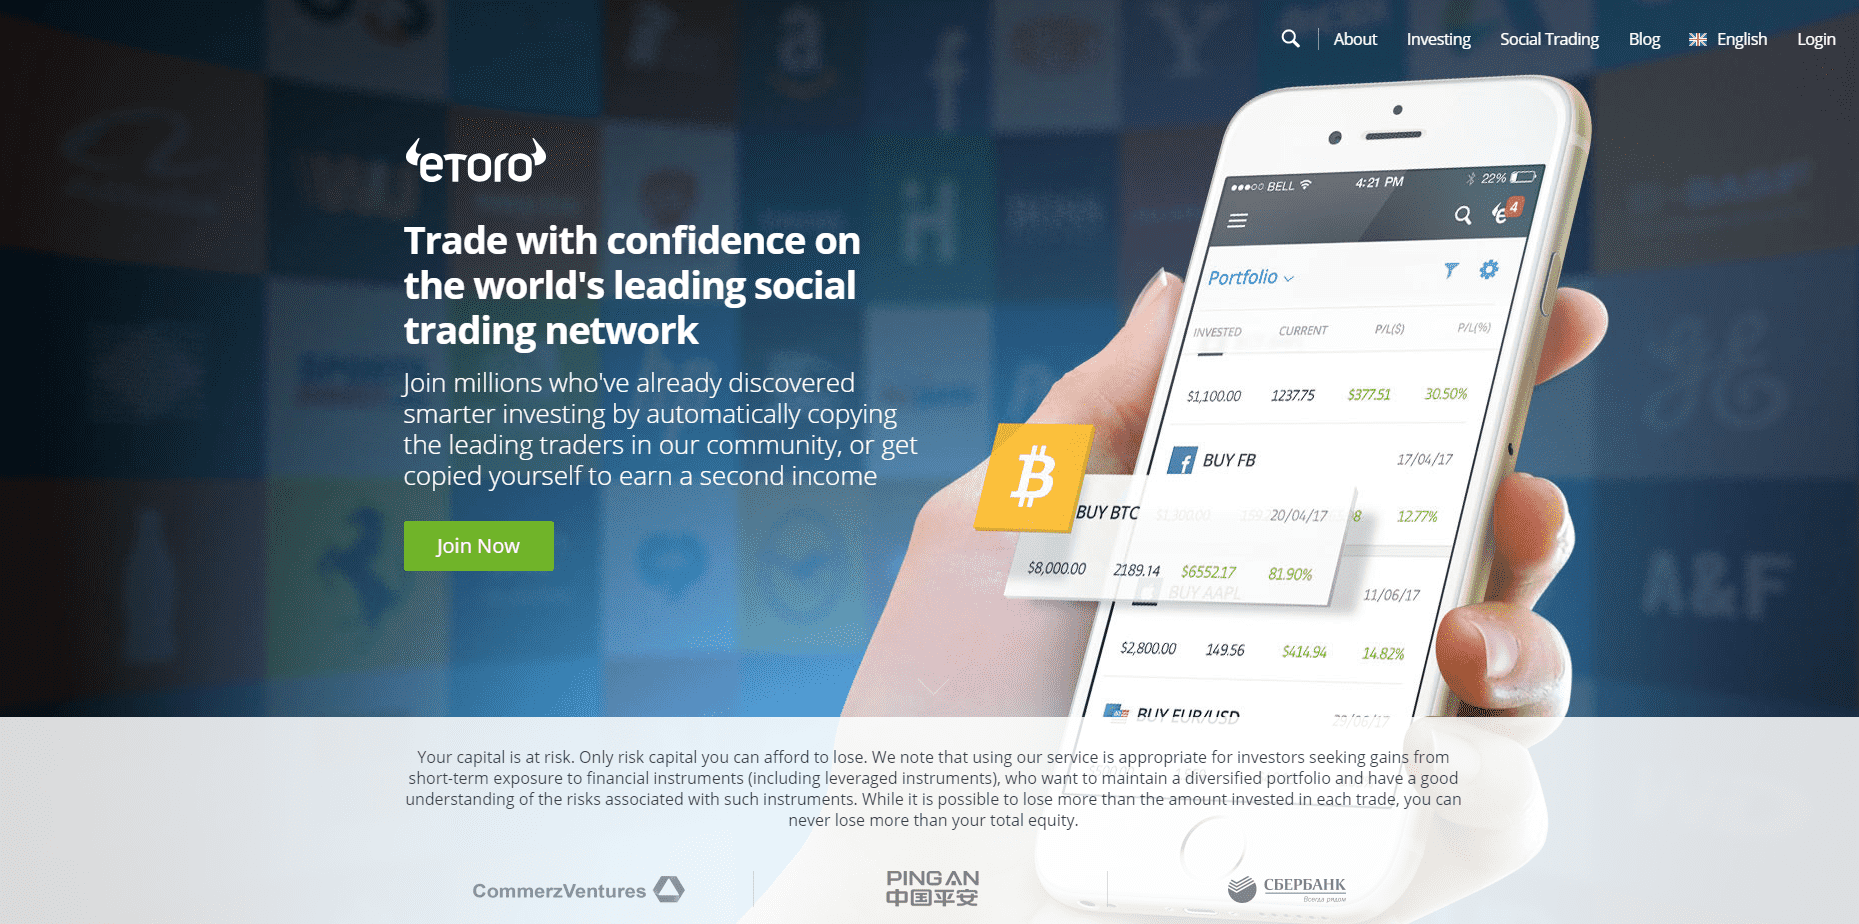 eToro Review 2019 - Pioneer of Online Social Trading eToro